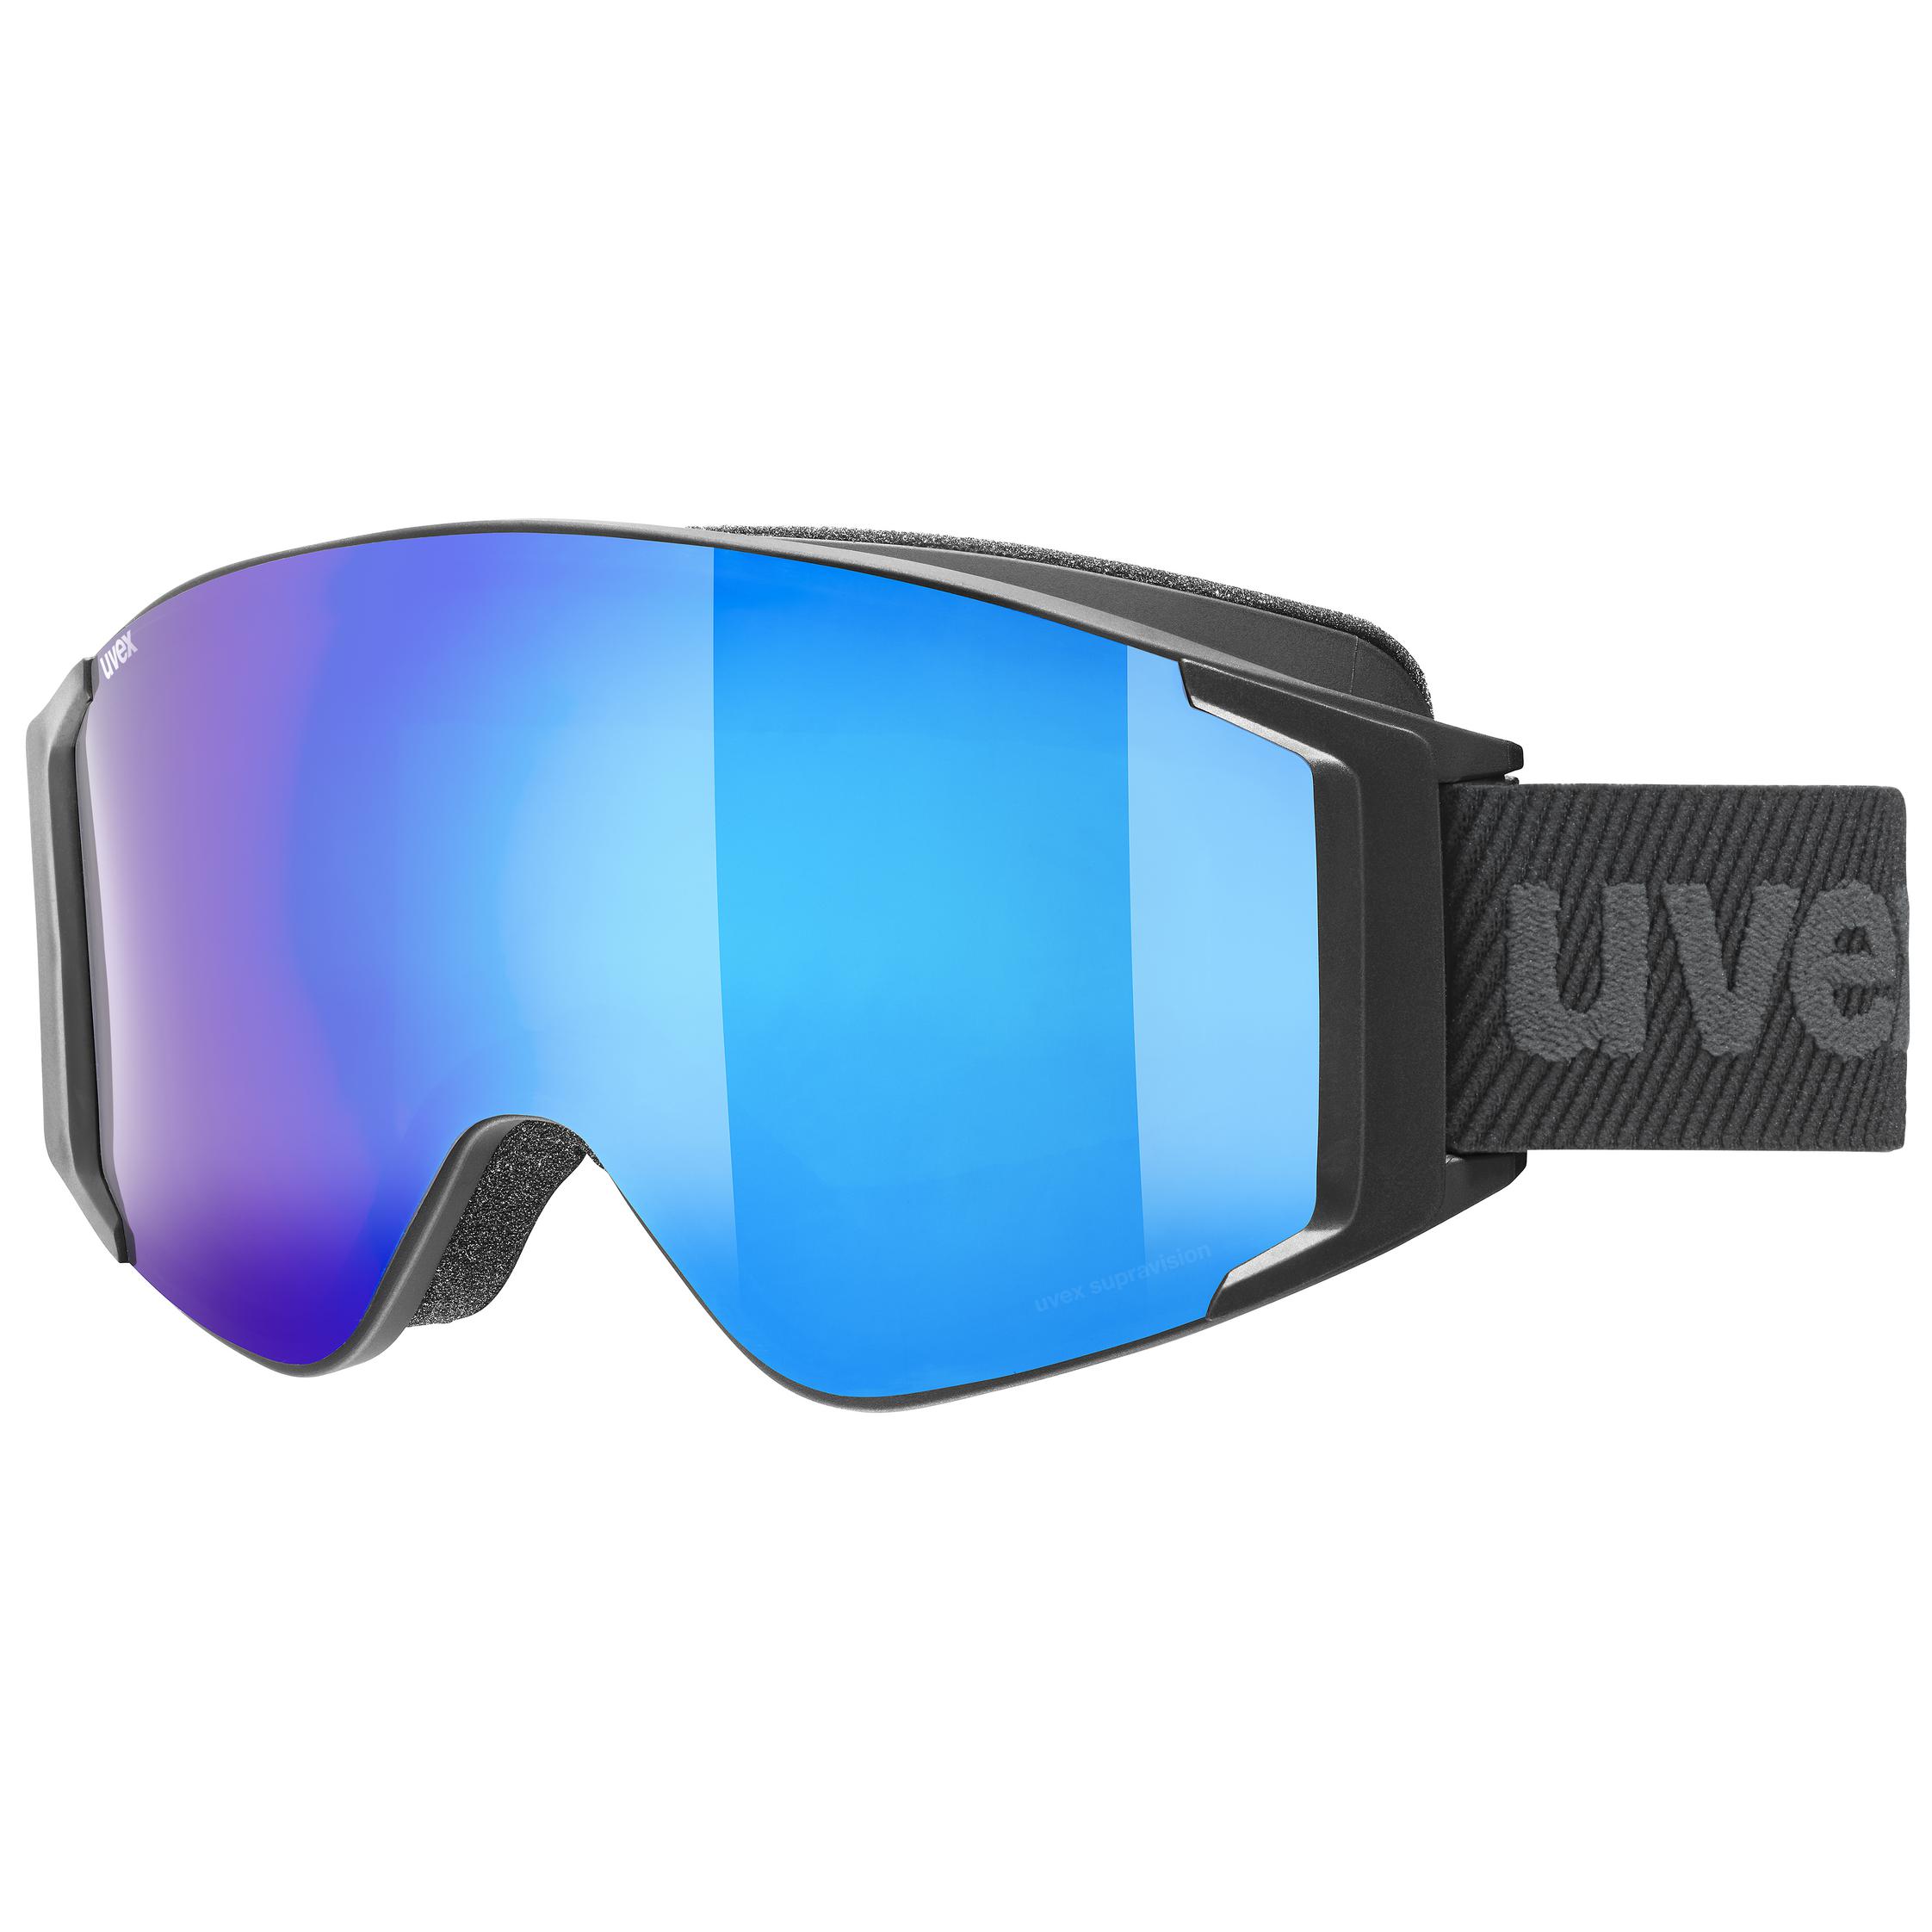 uvex g.gl 3000 TO black matt - blue | Ski goggles | uvex sports